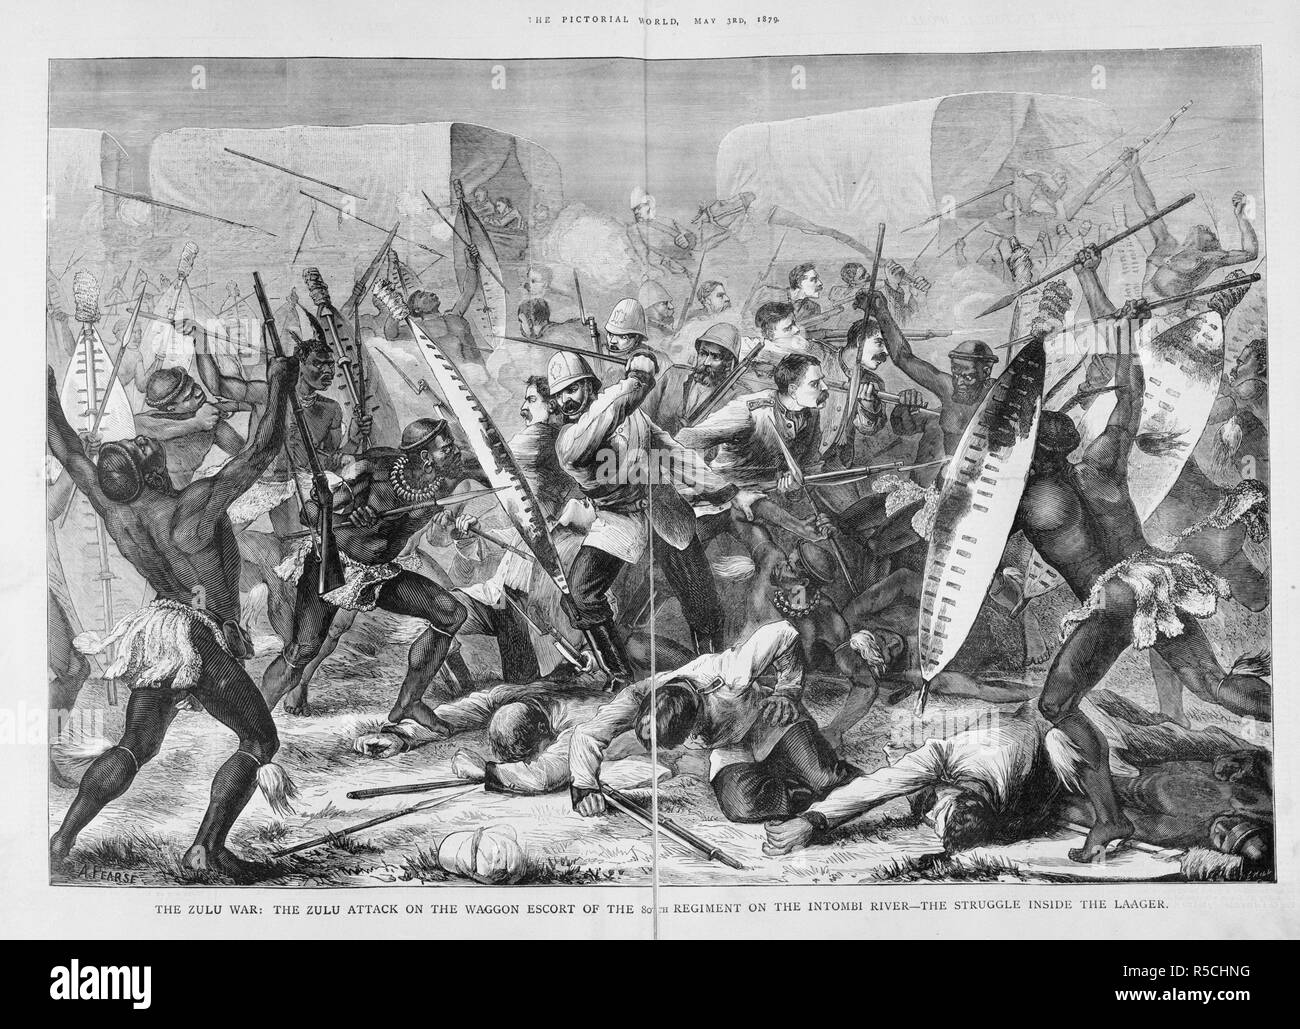 Intombi embuscade à River. Le monde pictural. Londres, 3 mai 1879. La guerre Zoulou Zoulou : l'attaque de l'escorte de chariot de la 80e Régiment sur la rivière Intombi- La lutte à l'intérieur de l'assiégés". Un détachement britannique est tombé dans une embuscade dans la nuit sur les rives de la rivière Intombi. L'officier survivant rode off, d'obtenir de l'aide, laissant ses hommes livrés à eux-mêmes. Plus de 80 soldats britanniques ont été tués. Image tirée du monde pictural. Publié à l'origine/produit à Londres, le 3 mai 1879. . Source : Colindale,. Langue : Anglais. Auteur : HILL. Pearse, A. Banque D'Images